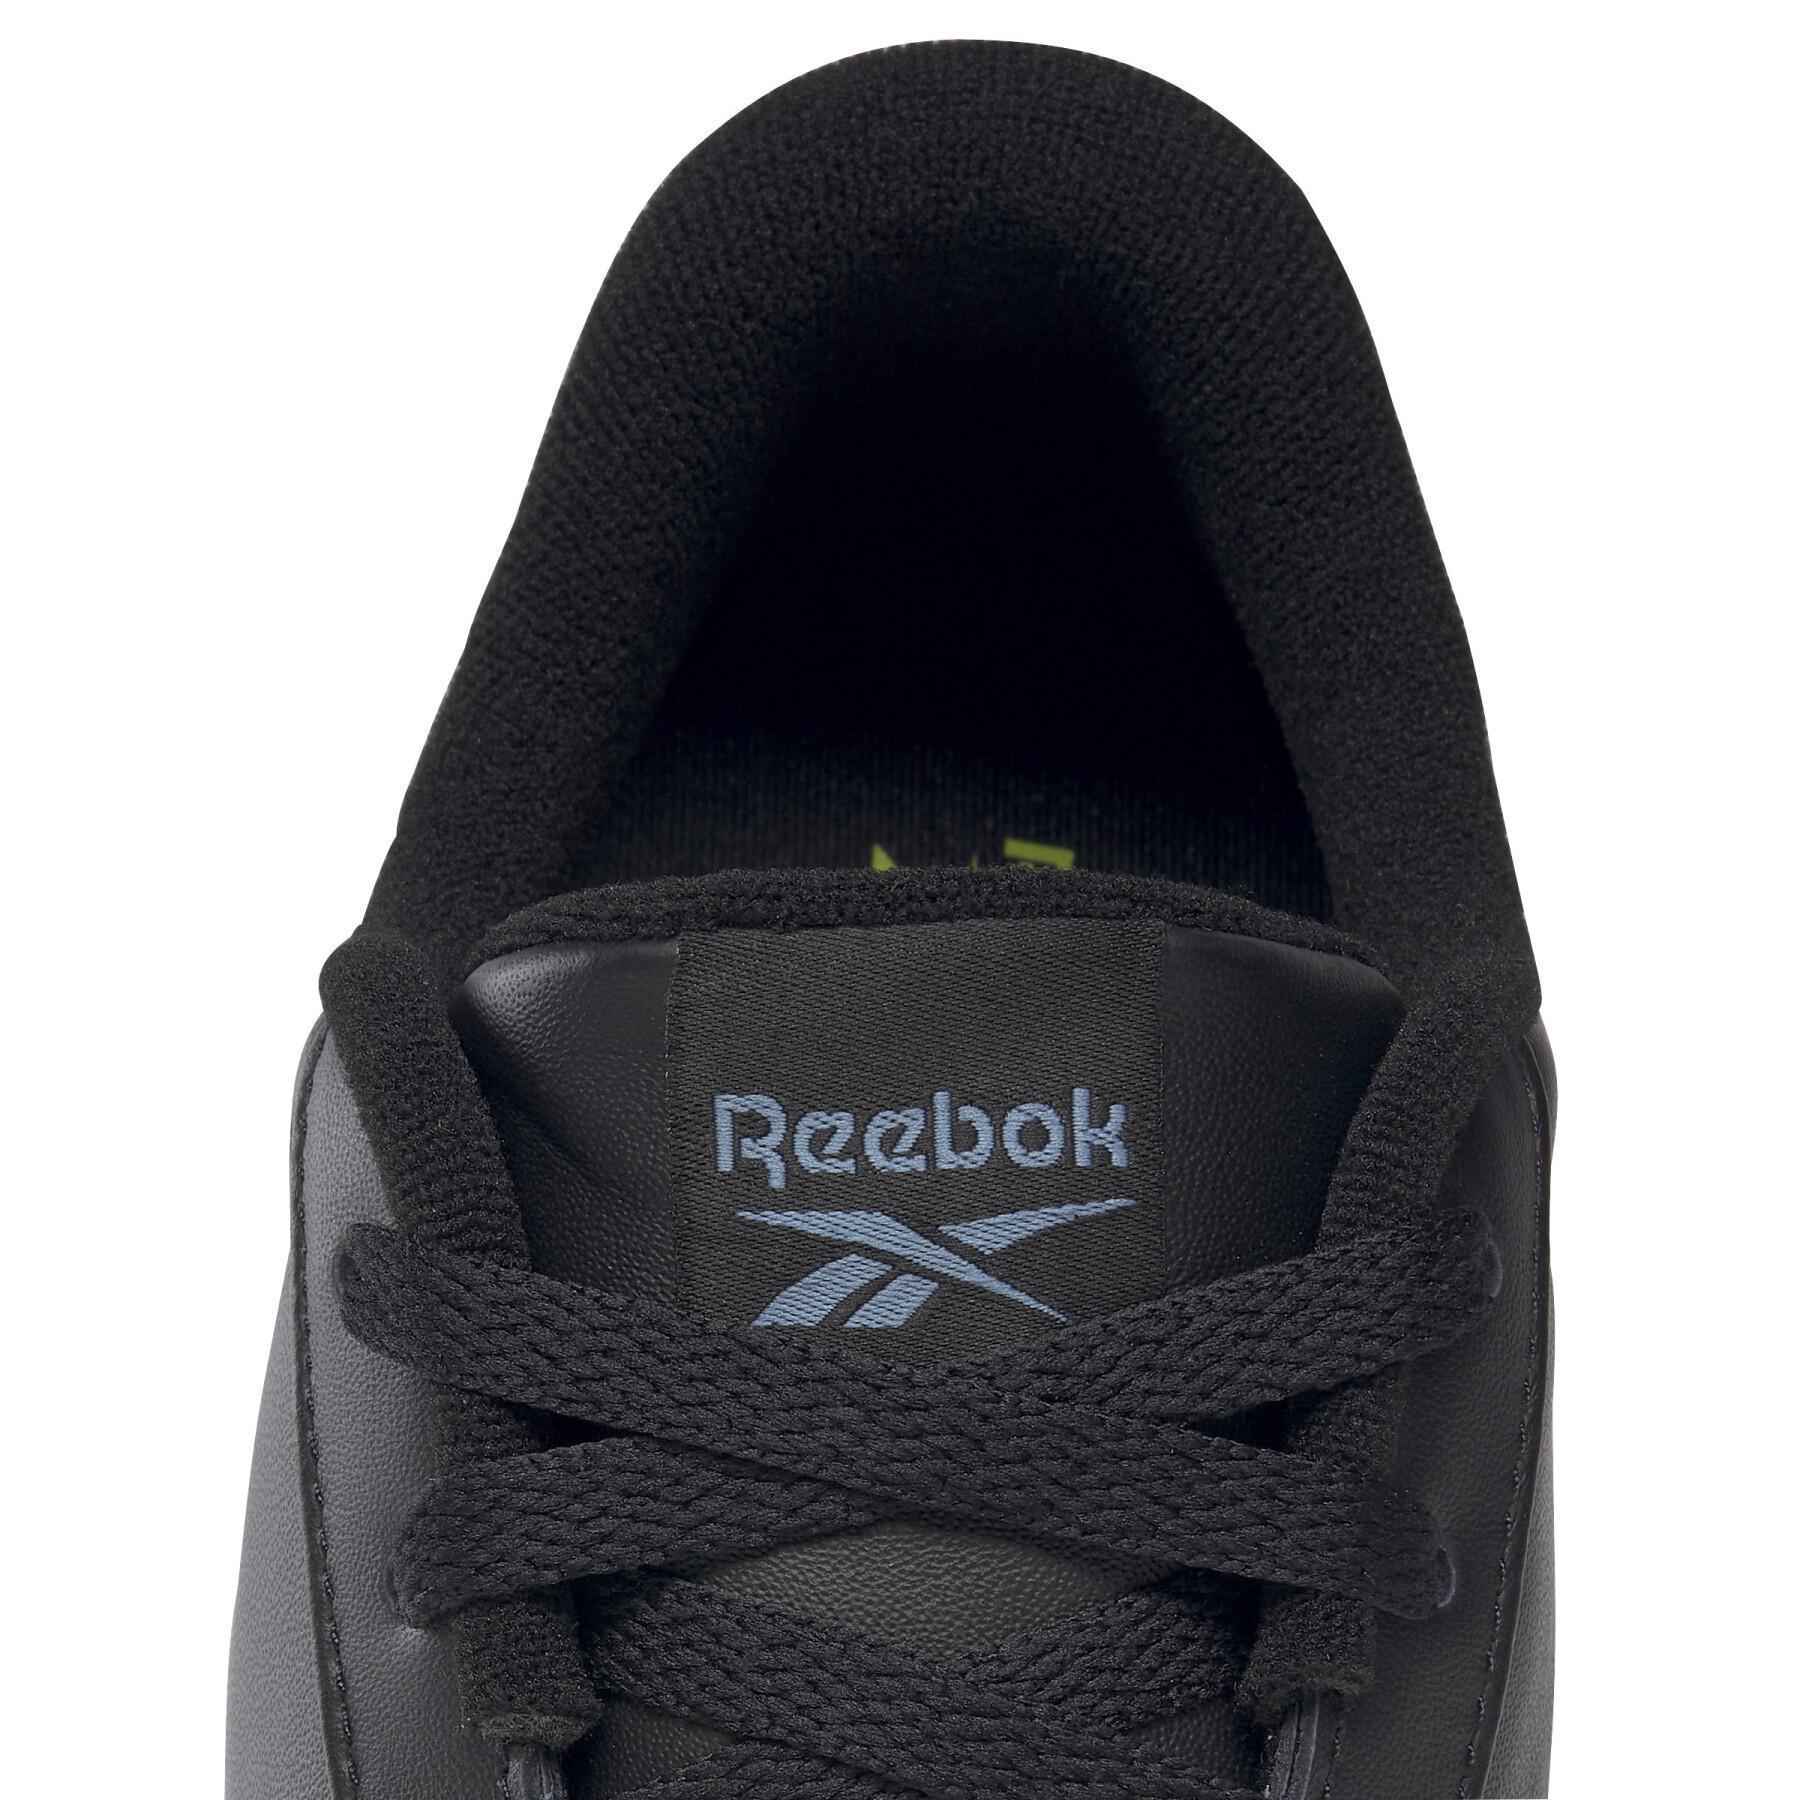 Sapatos Reebok Ever Road DMX 4